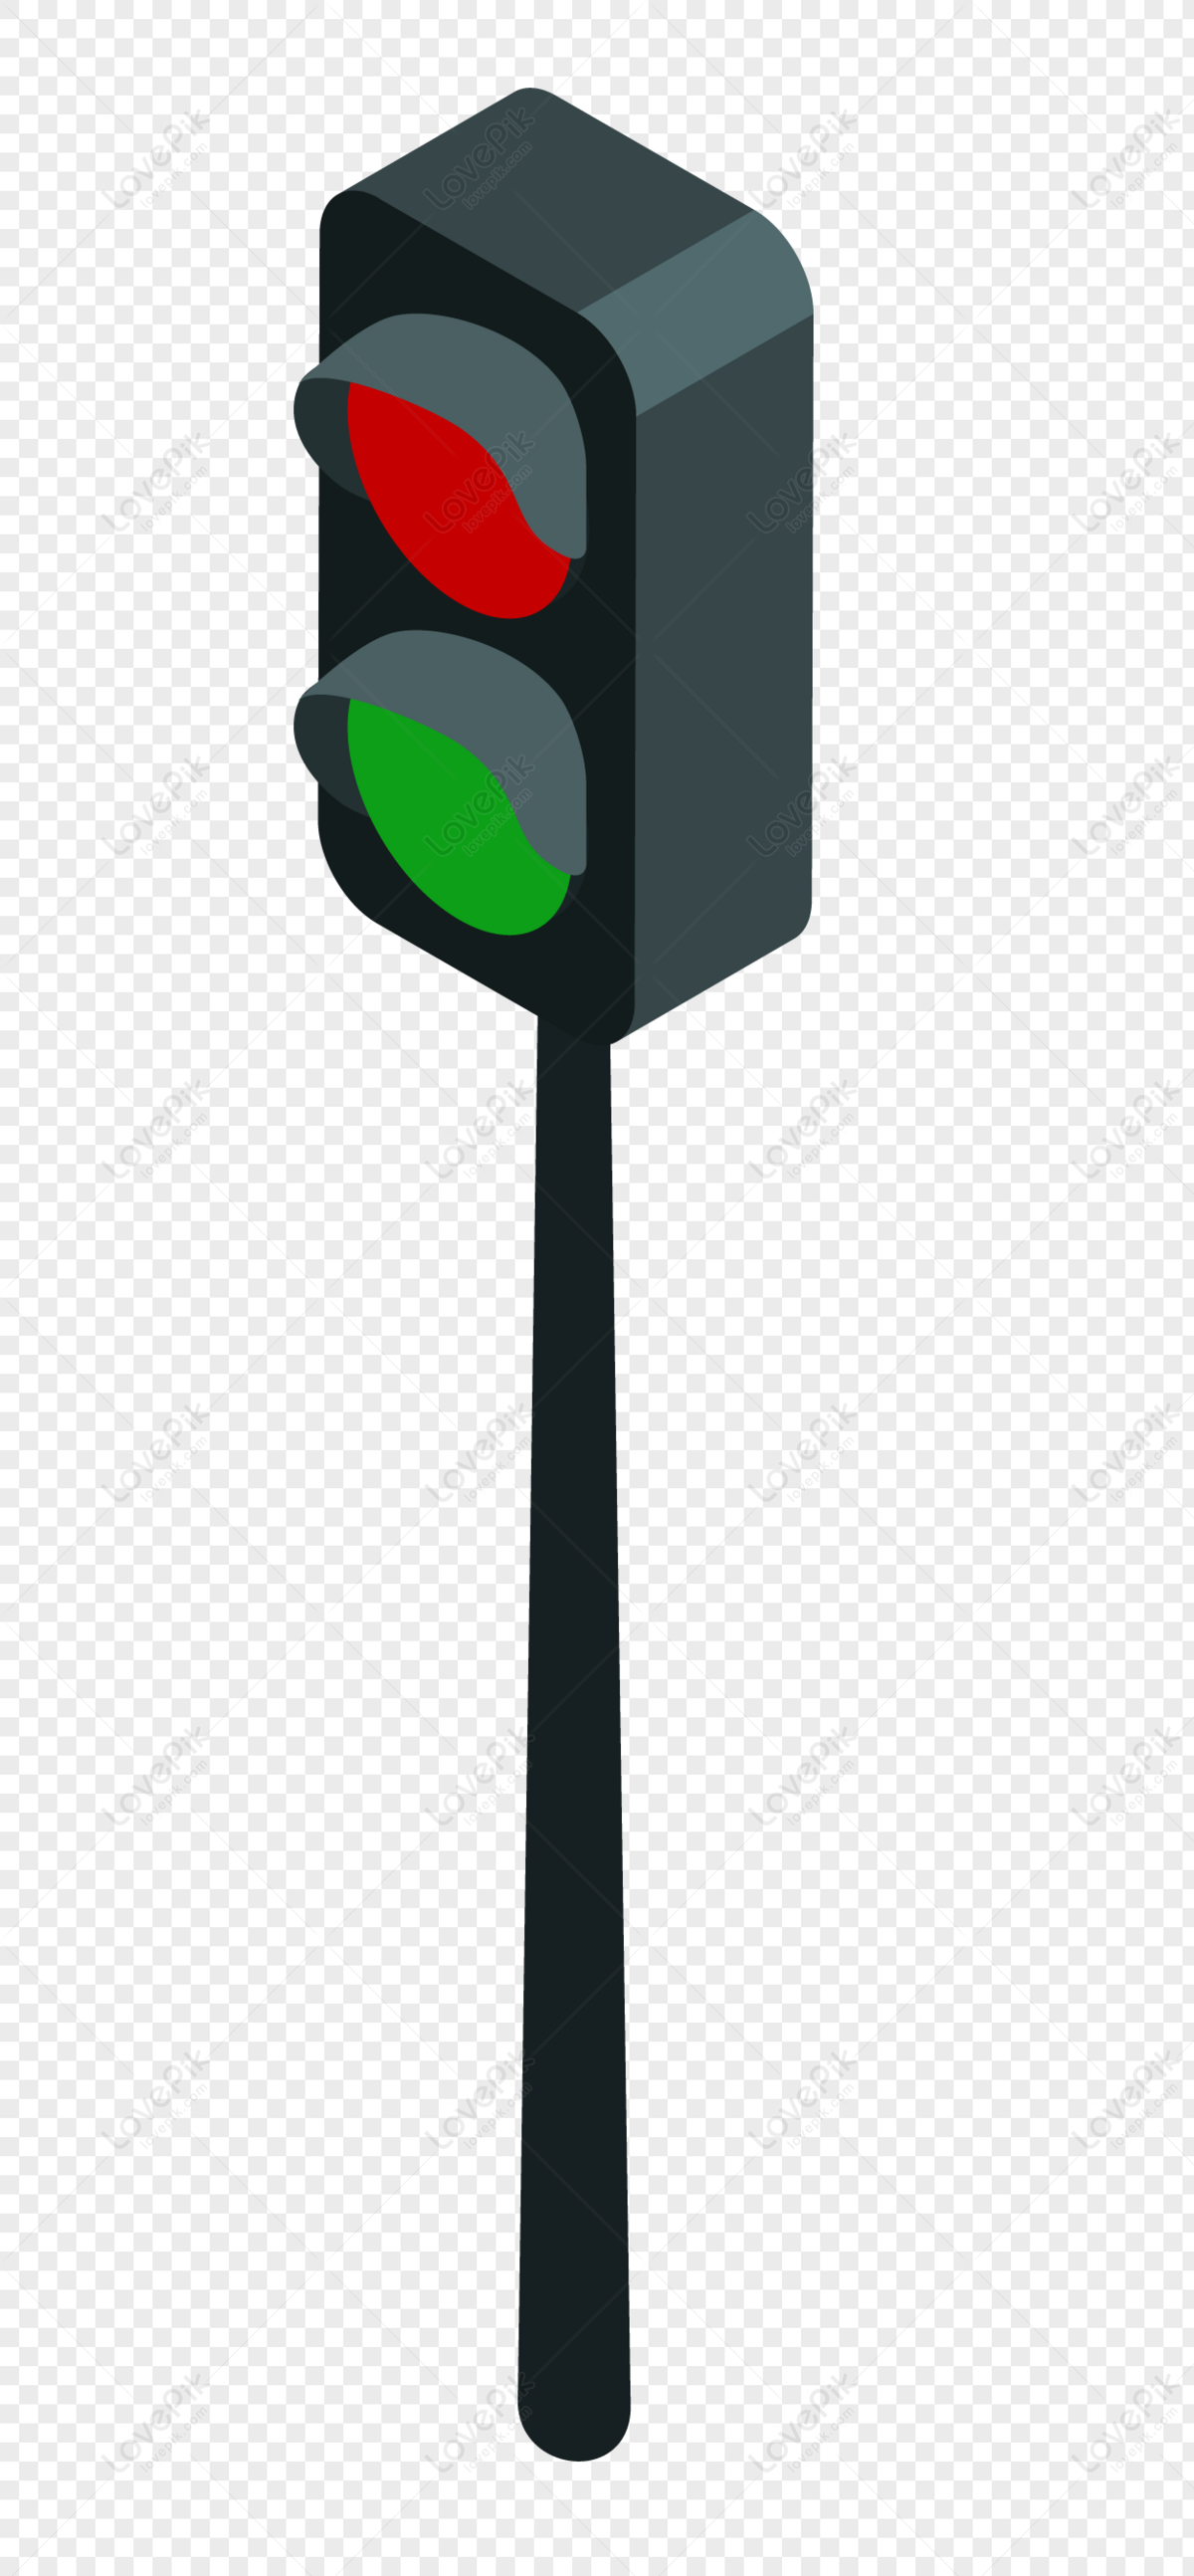 hình ảnh : ánh sáng, giao thông, màu xanh lá, lái xe, đèn đường, thắp sáng,  Trang trí, đèn giao thông, biển báo, Ánh sáng fixture, Hình dạng, Tín hiệu  ánh sáng,